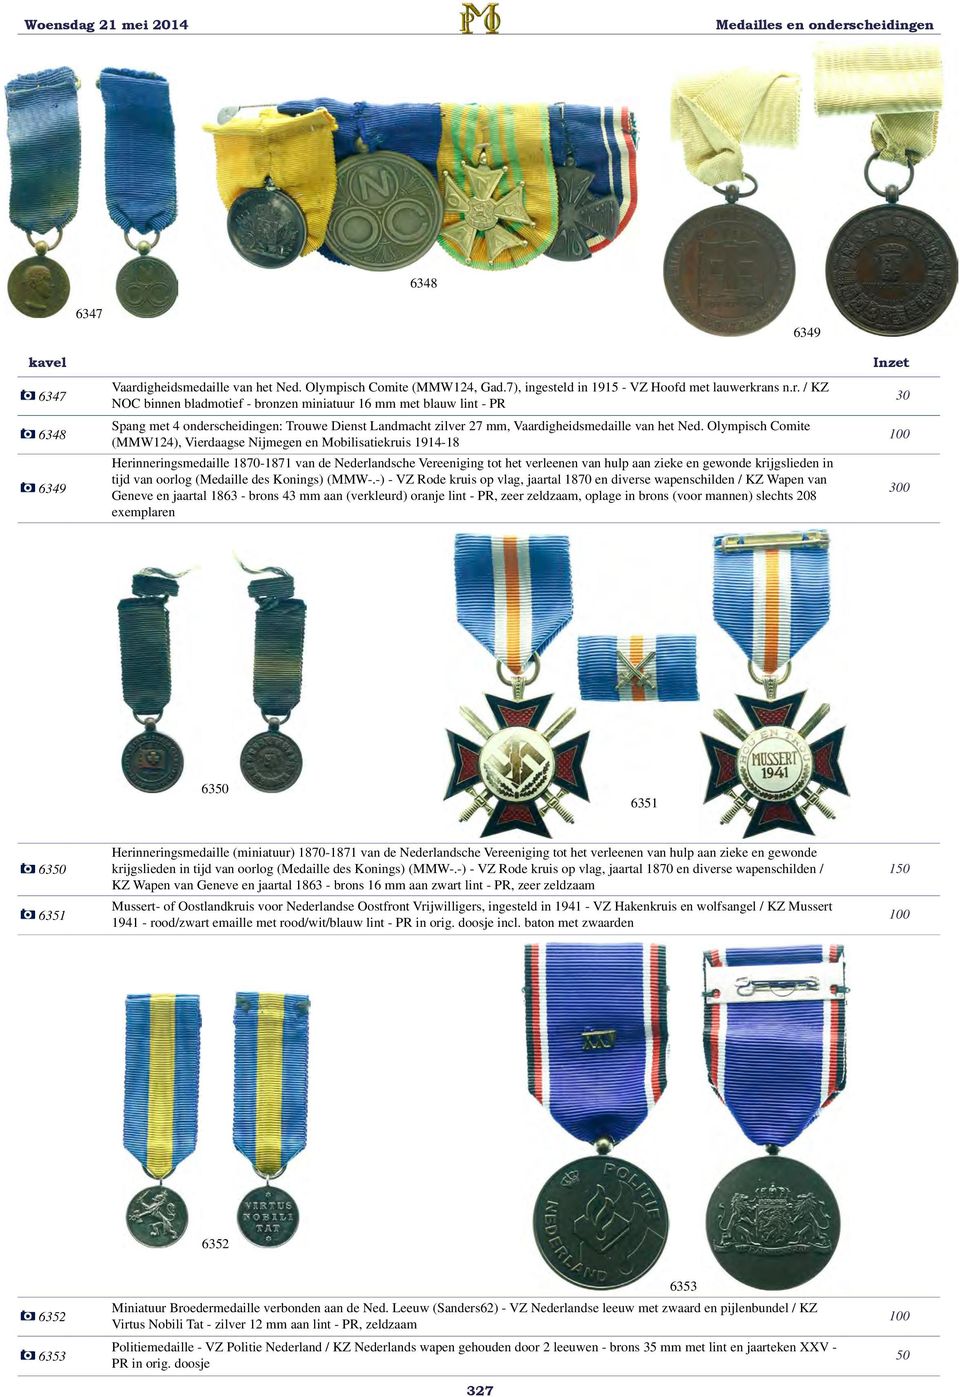 rans n.r. / KZ NOC binnen bladmotief - bronzen miniatuur 16 mm met blauw lint - PR Spang met 4 onderscheidingen: Trouwe Dienst Landmacht zilver 27 mm, Vaardigheidsmedaille van het Ned.